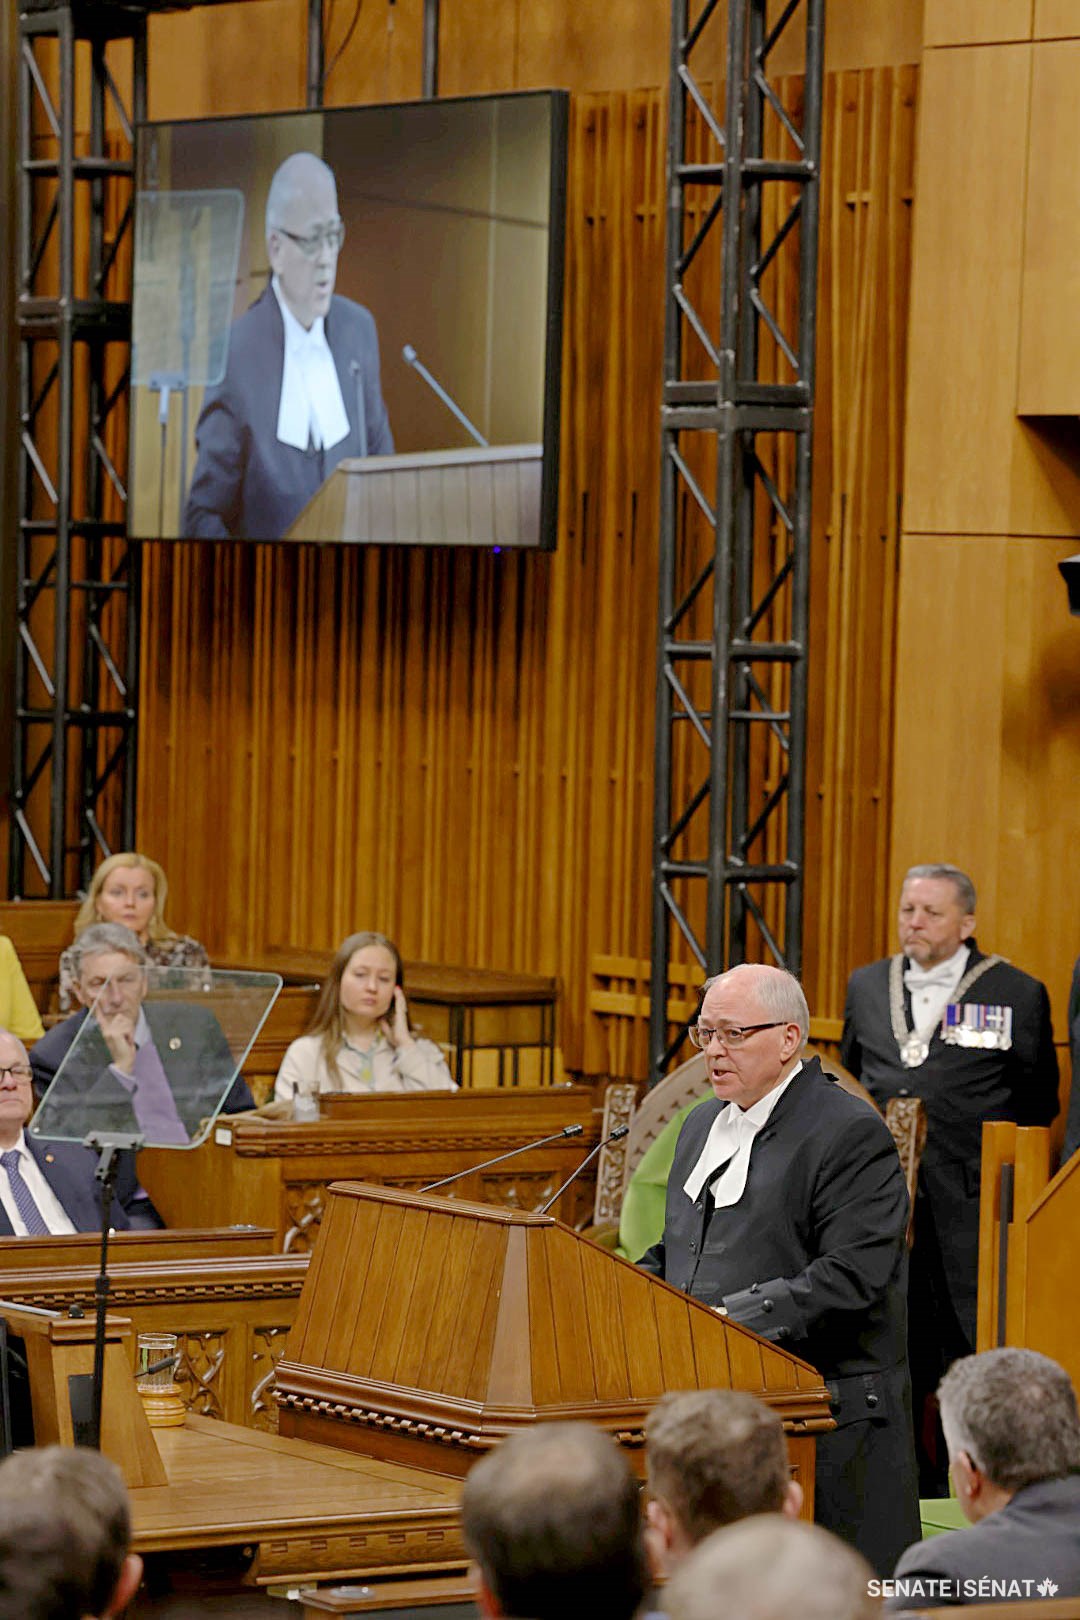 Speaker Furey called Ms. von der Leyen “a great friend of Canada” after her address to Parliament.